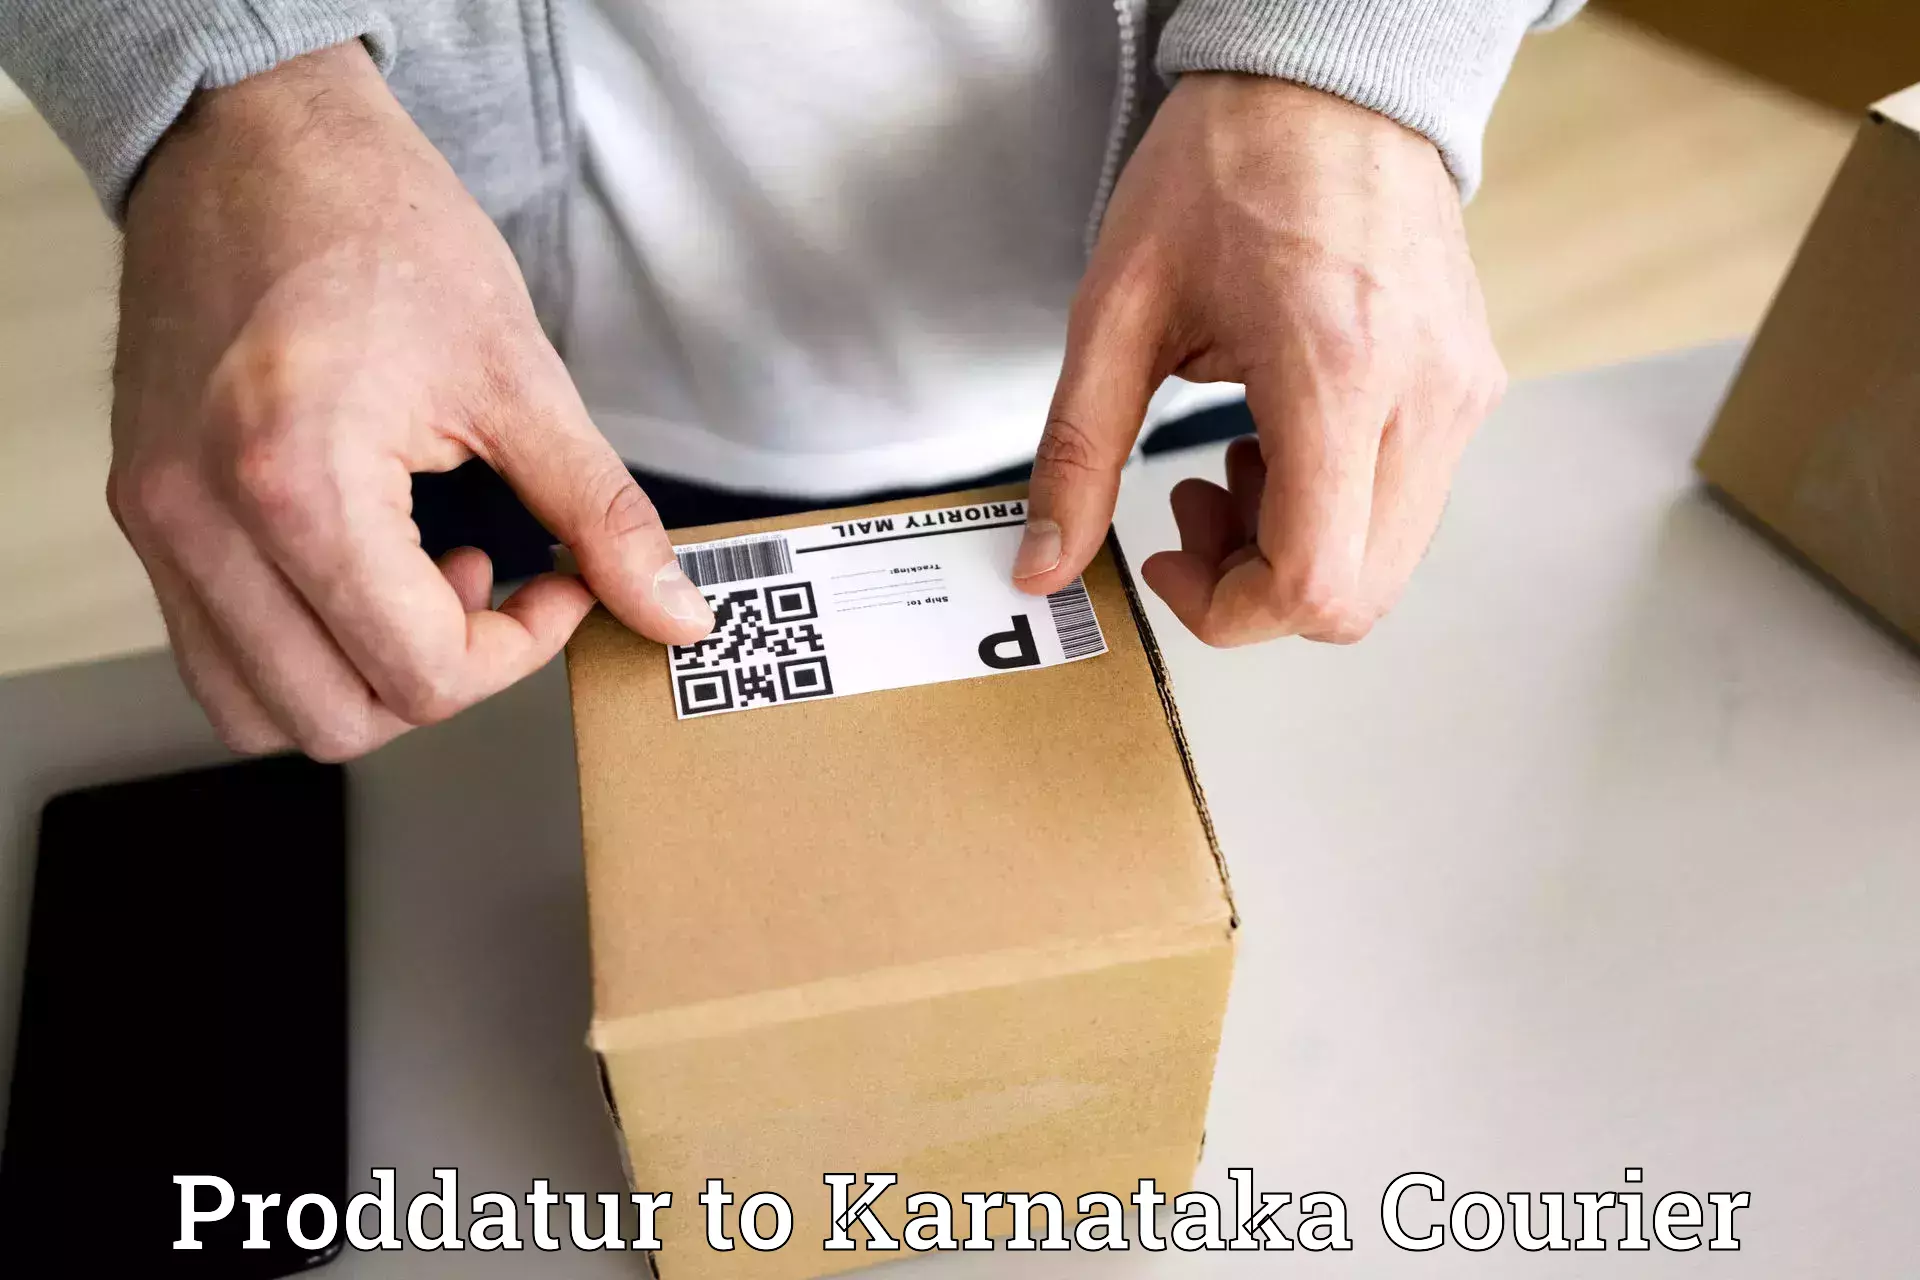 Optimized delivery routes Proddatur to Yenepoya Mangalore